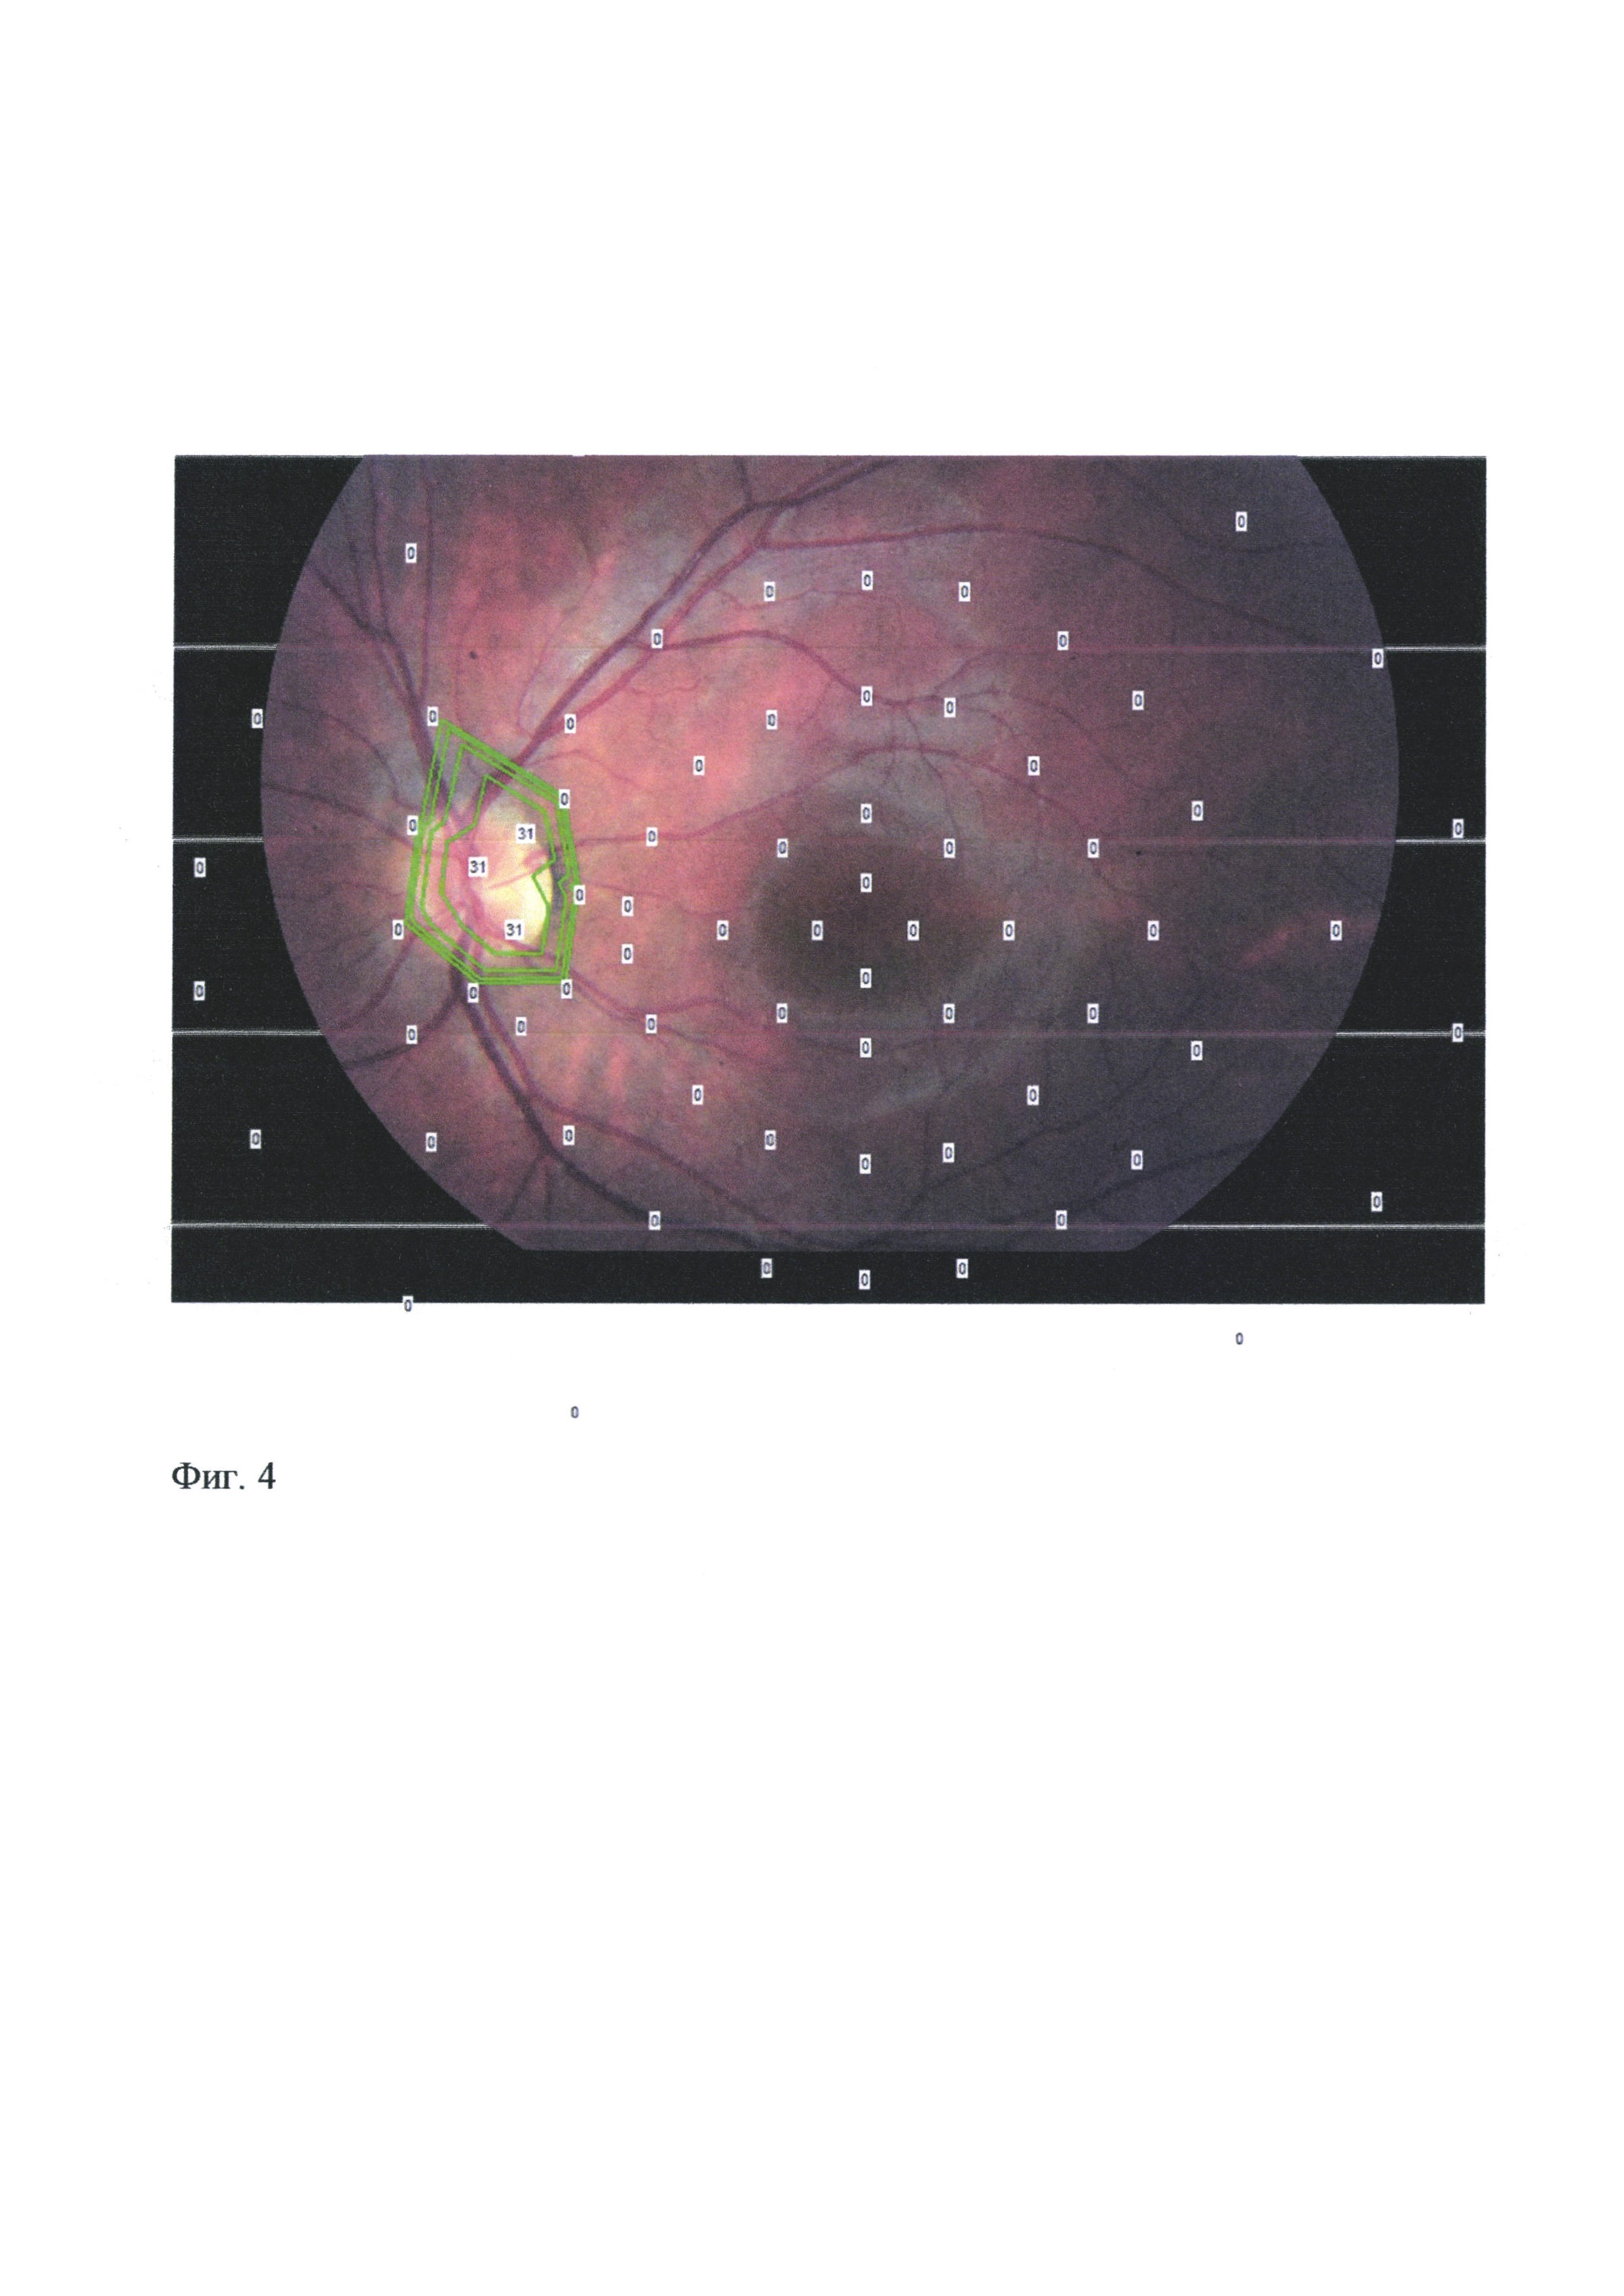 Способ определения структурно-функциональных изменений сетчатки и зрительного нерва при друзах диска зрительного нерва